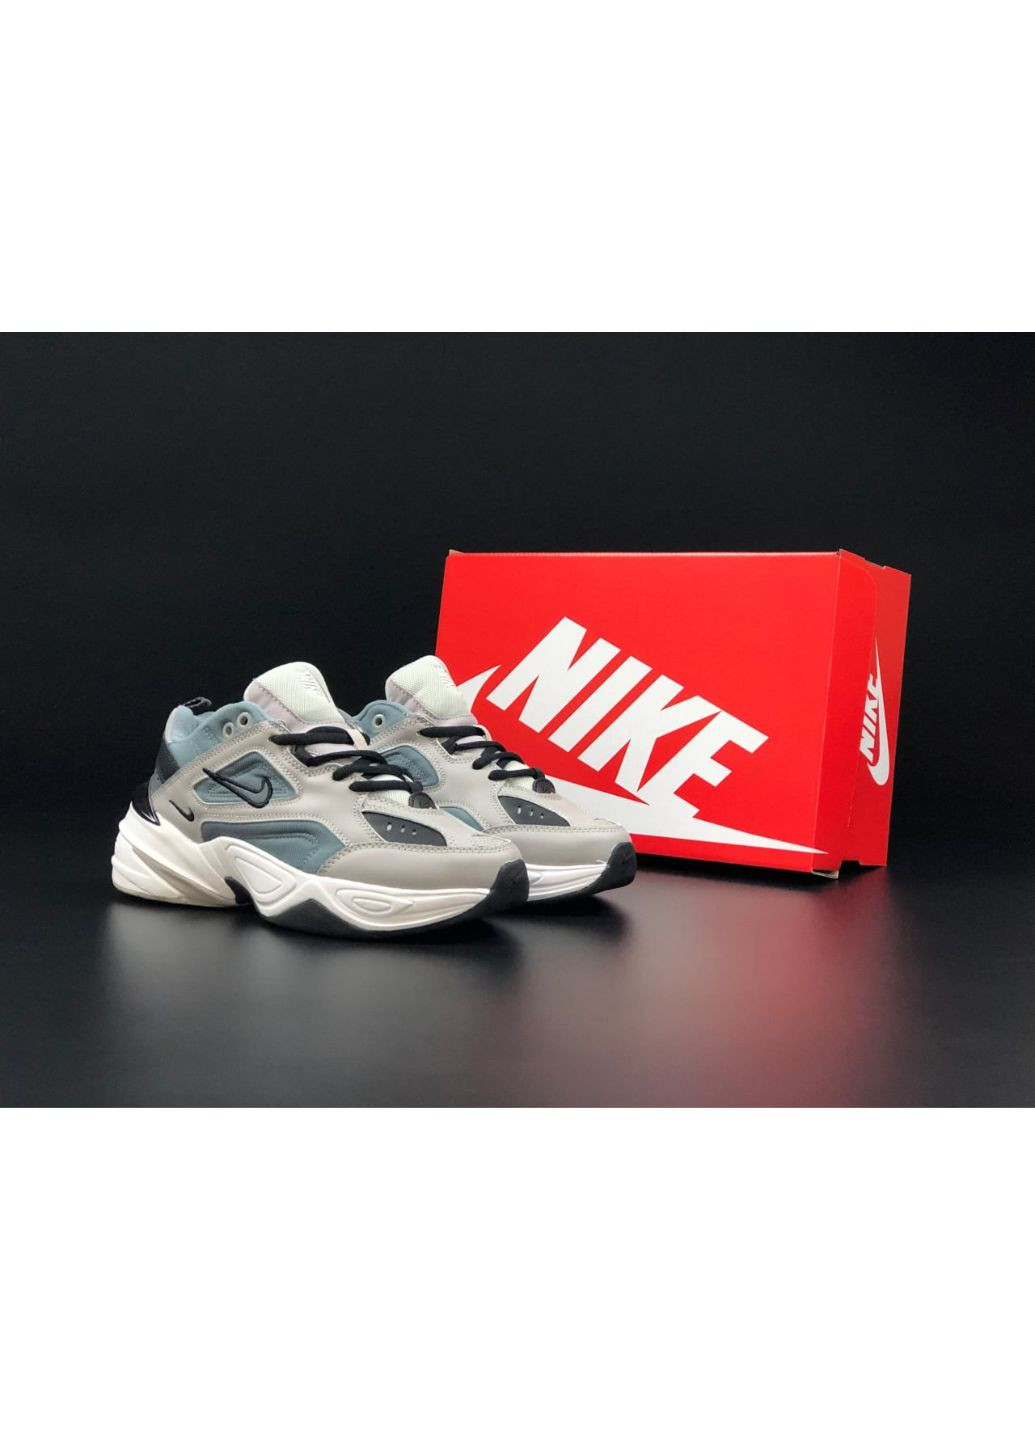 Сірі осінні жіночі кросівки сірі «no name» Nike M2k Tekno